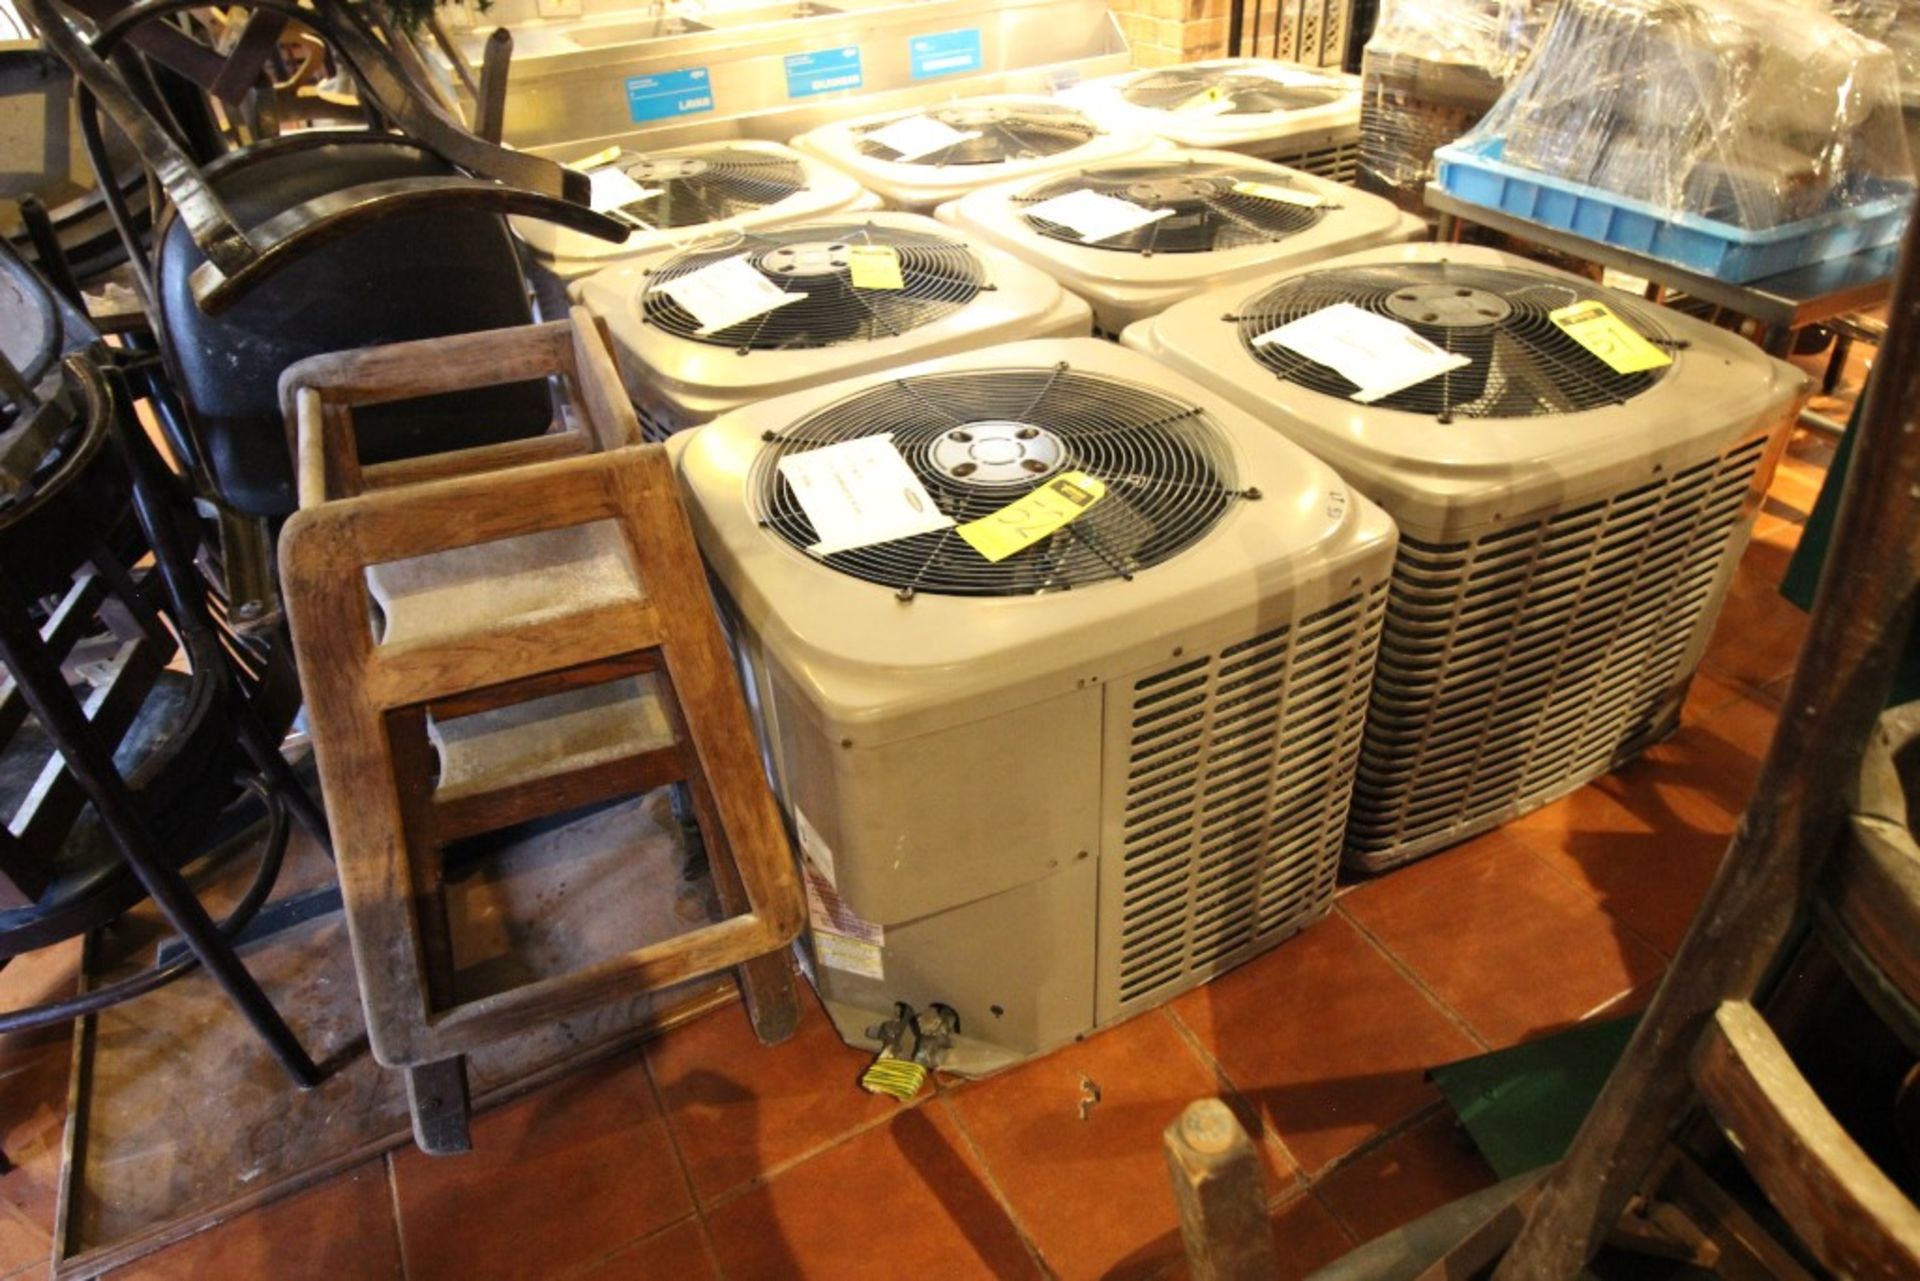 3 Unidades Condensadoras para aire acondicionado de un ventilador marca York, modelo:YCJD36S41S1A, - Image 17 of 19